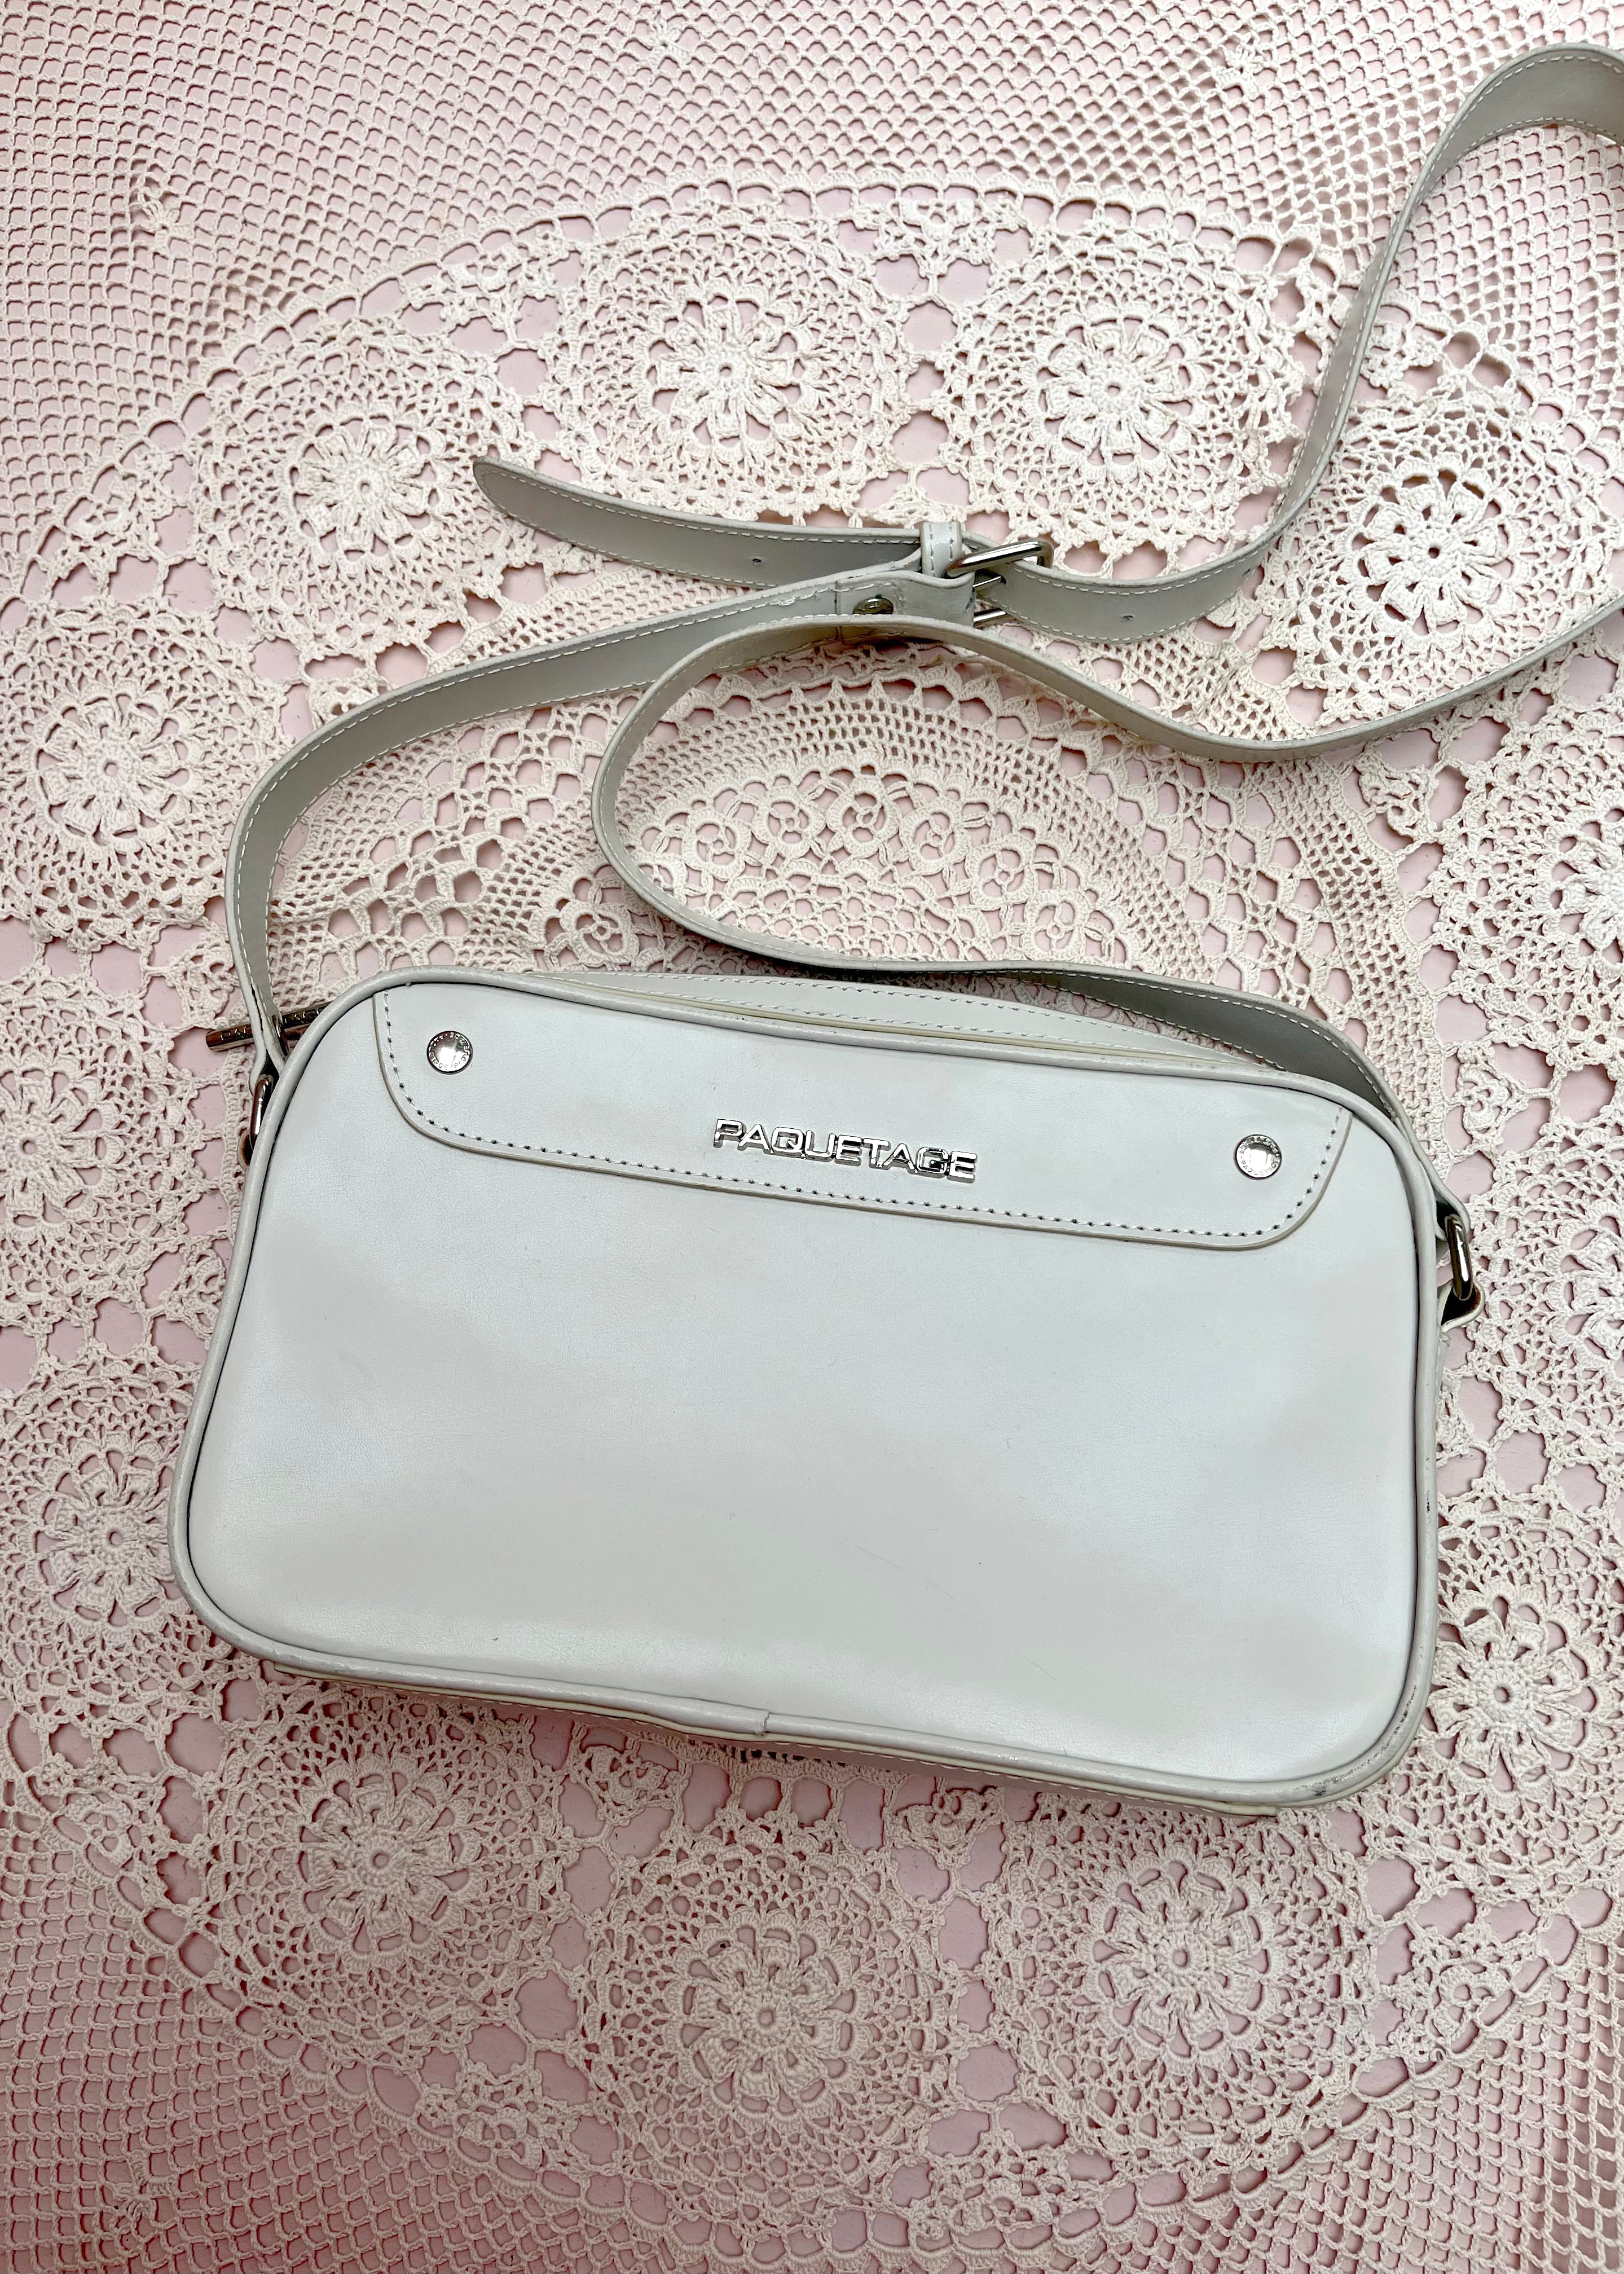 Paquetage Cream Shoulder Bag